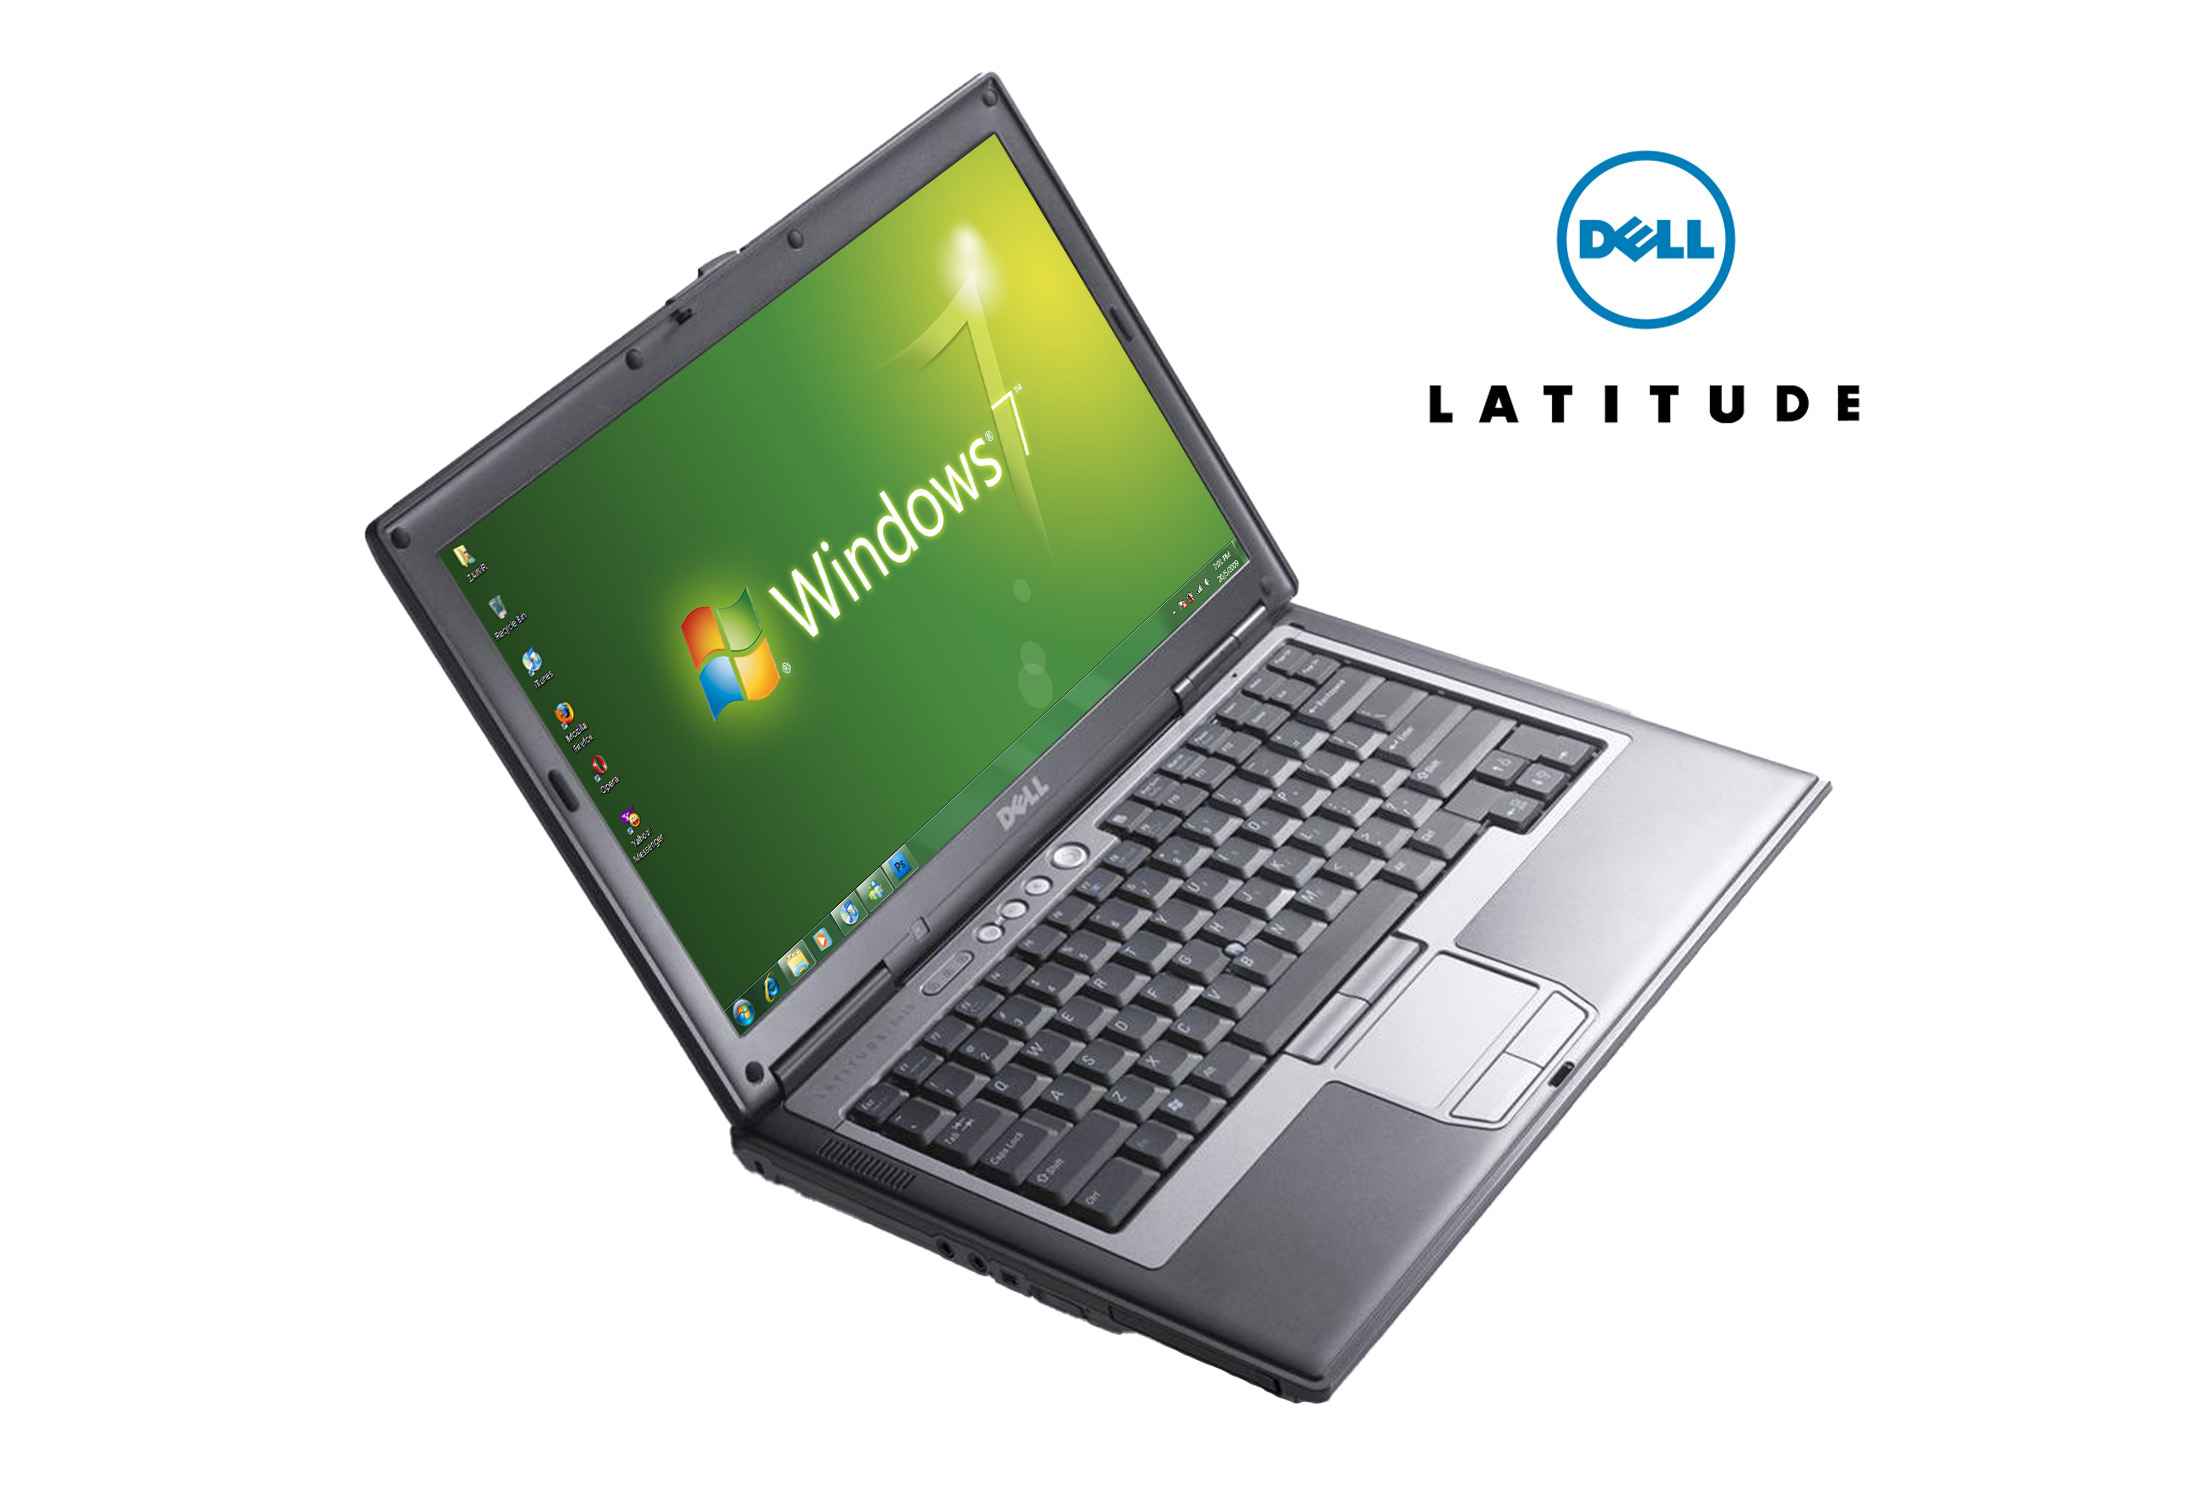 Dell Latitude D630 C2D Т7250 8GB RAM 256GB SSD 1280x800-tAWSM.jpeg